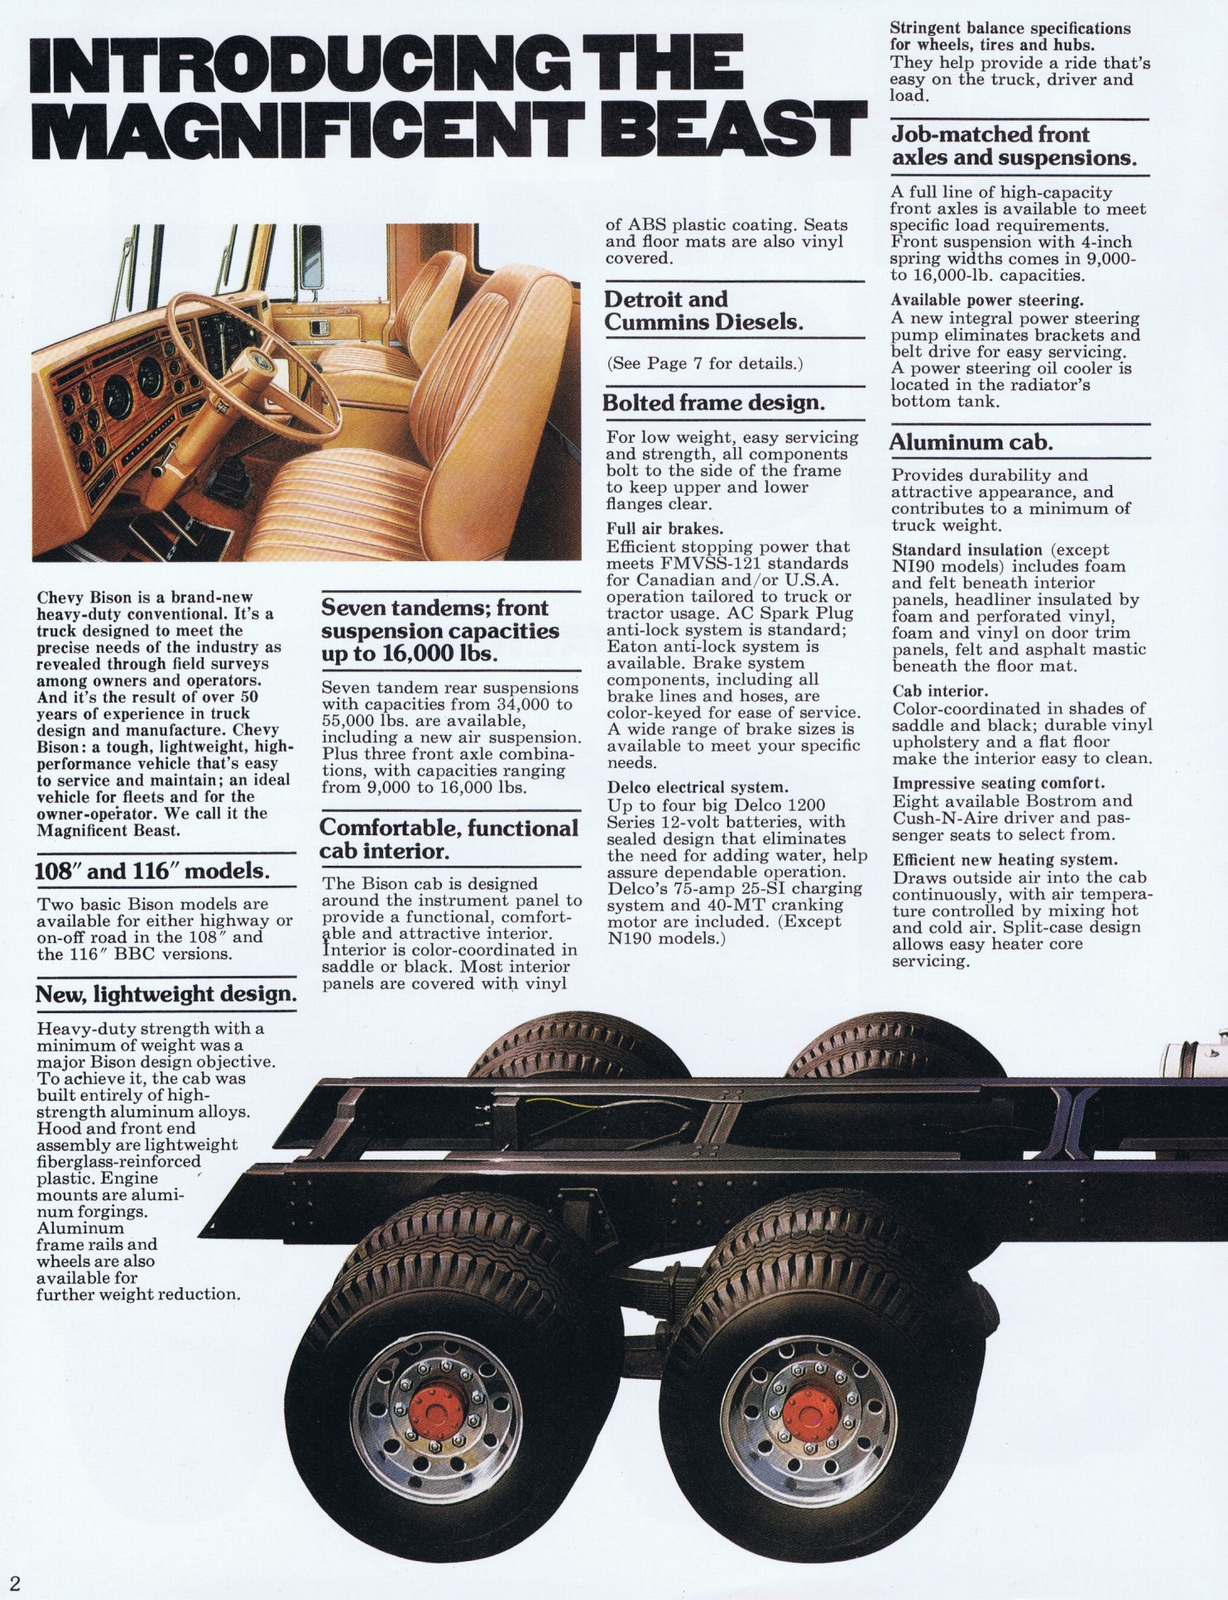 n_1977 Chevrolet Bison-02.jpg